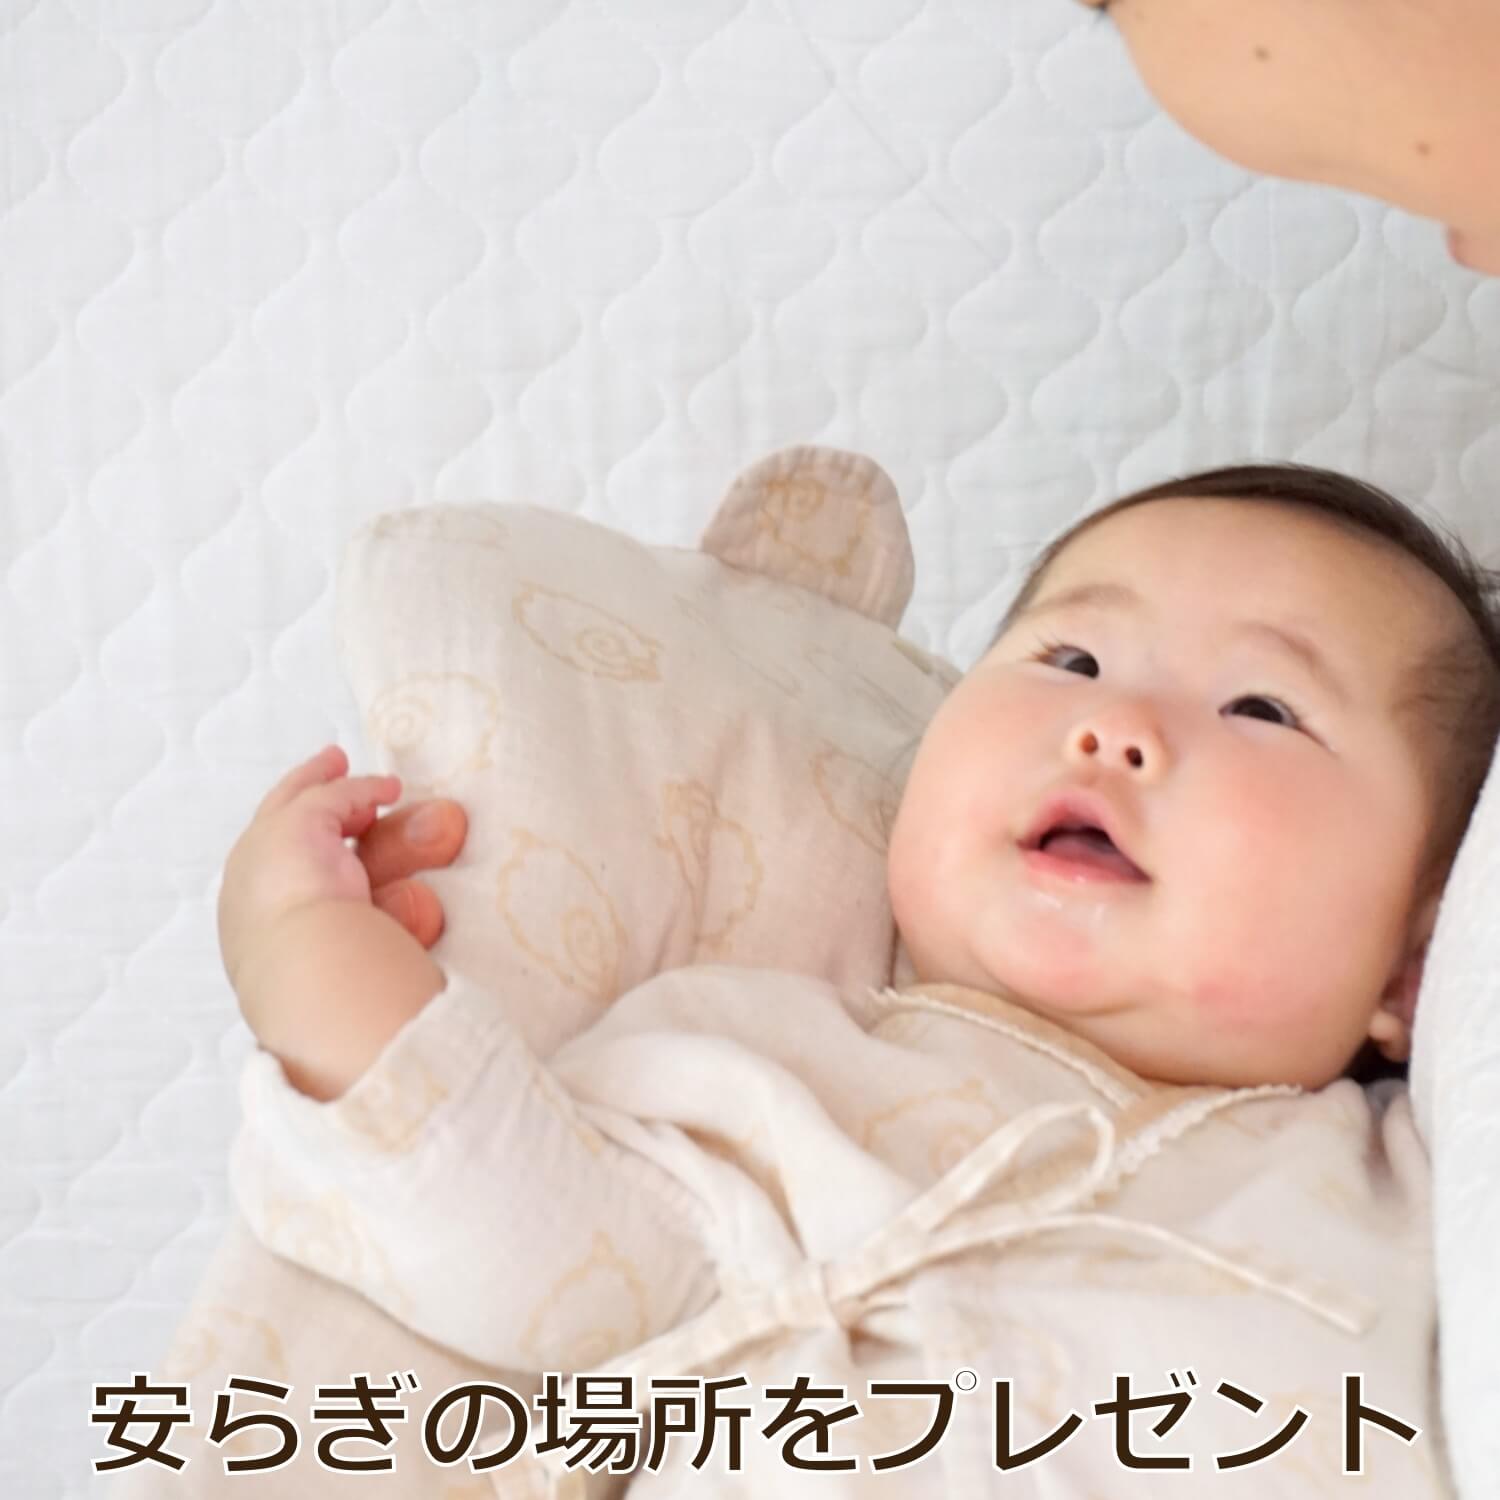 トッポンチーノで抱かれる赤ちゃんの写真